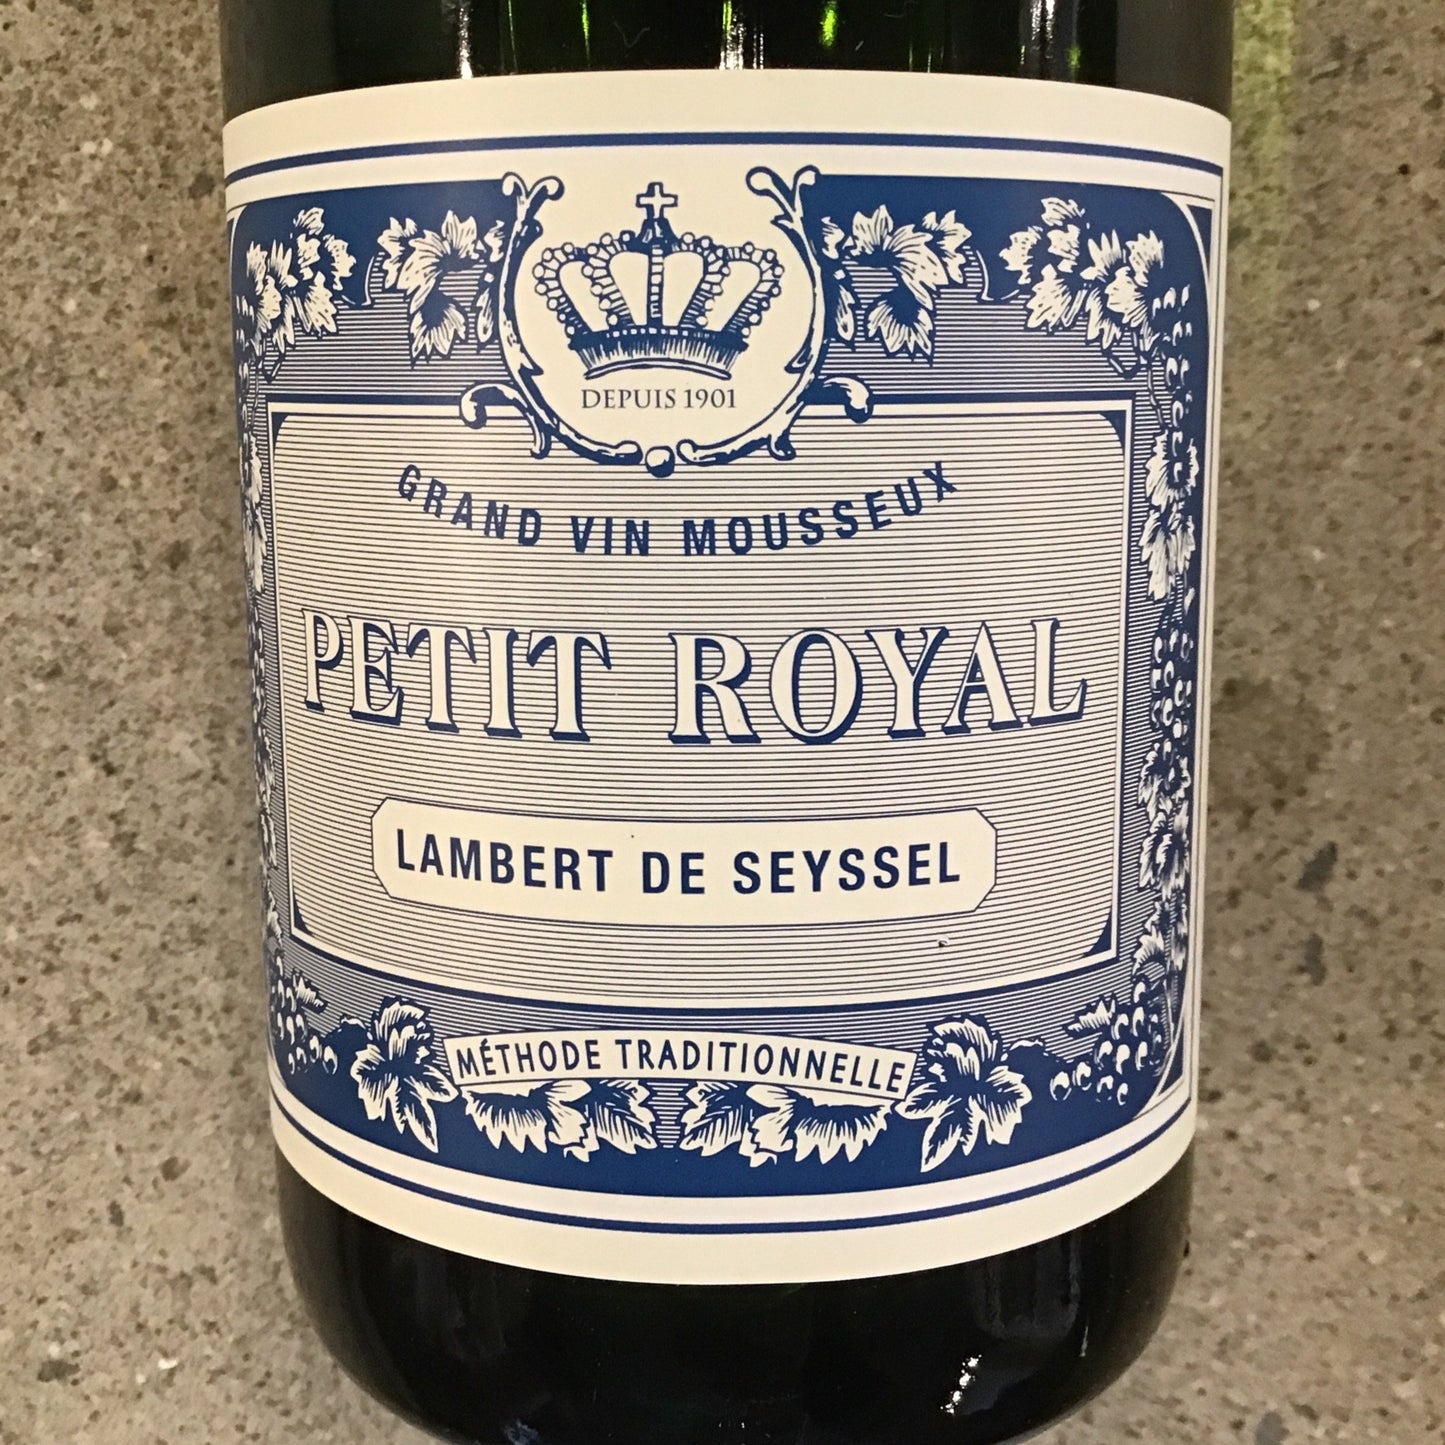 Lambert De Seyssel Petit Royal